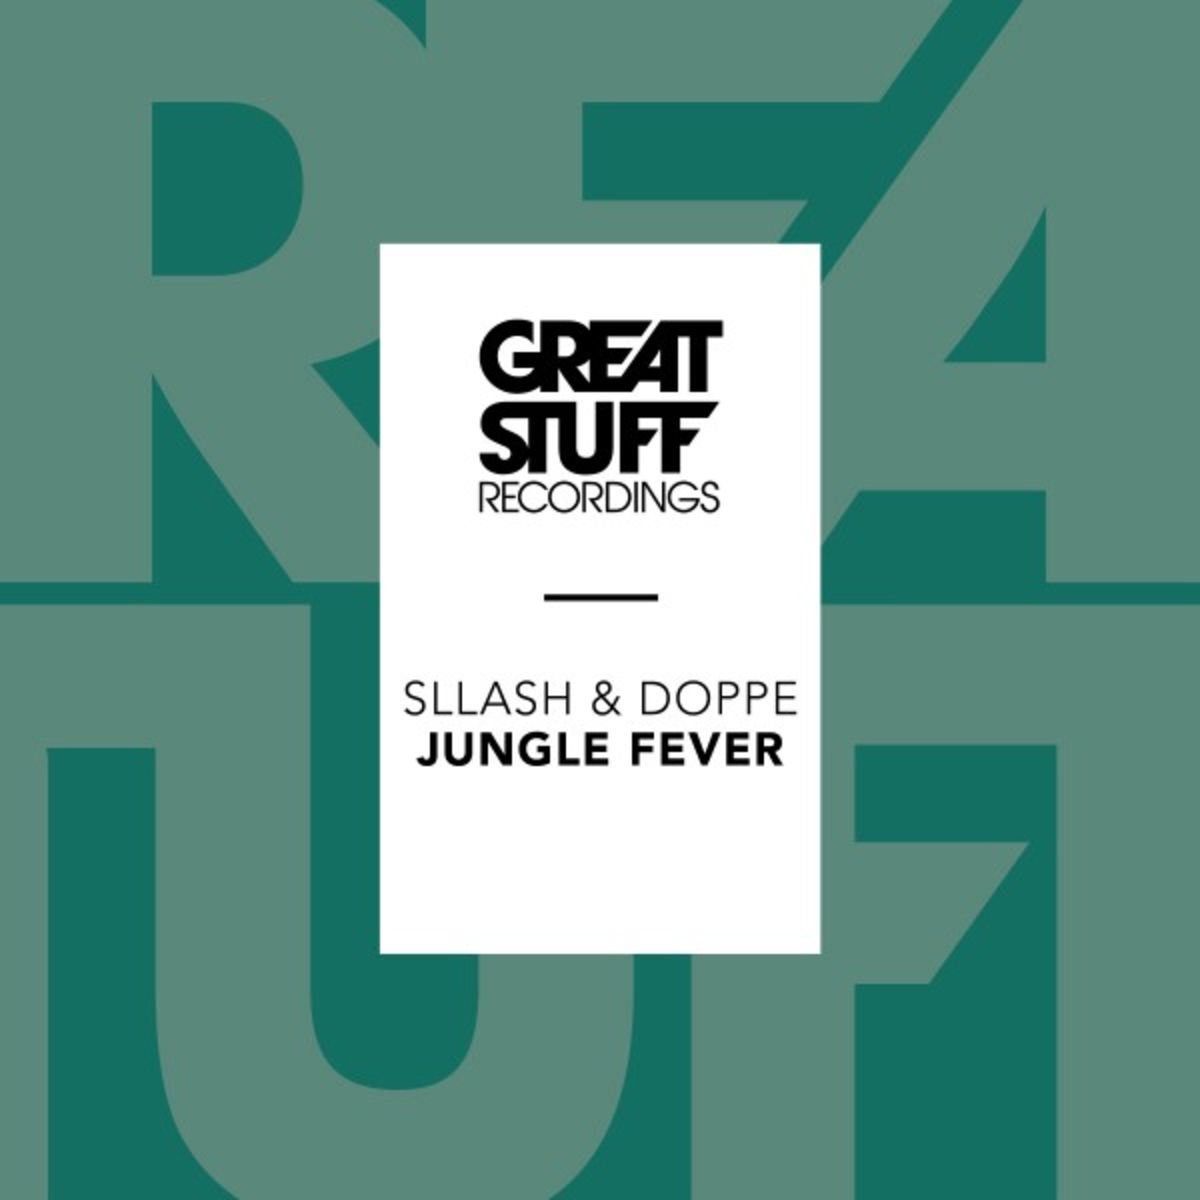 Sllash & Doppe - Jungle Fever / Great Stuff